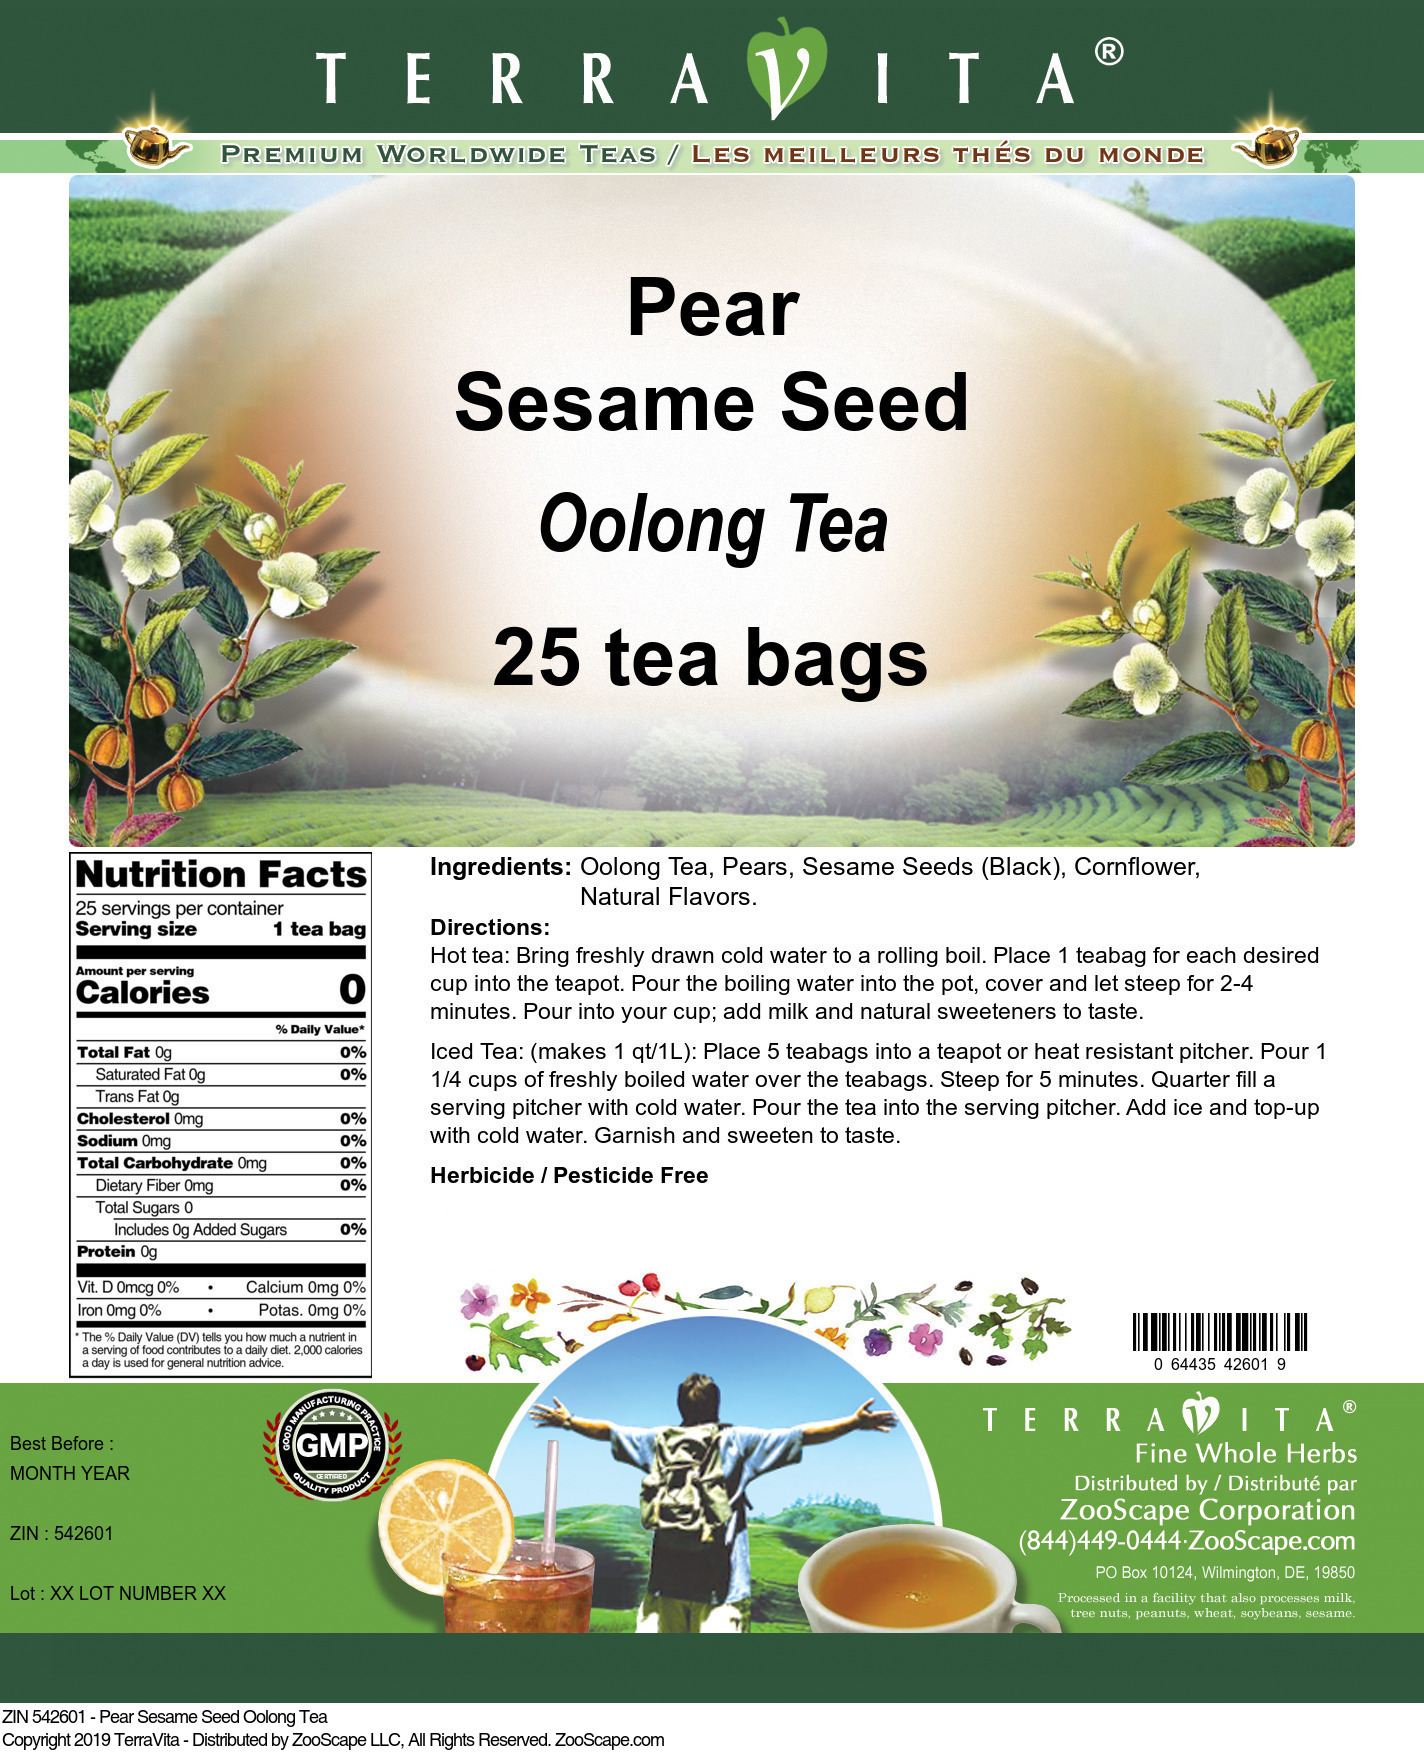 Pear Sesame Seed Oolong Tea - Label